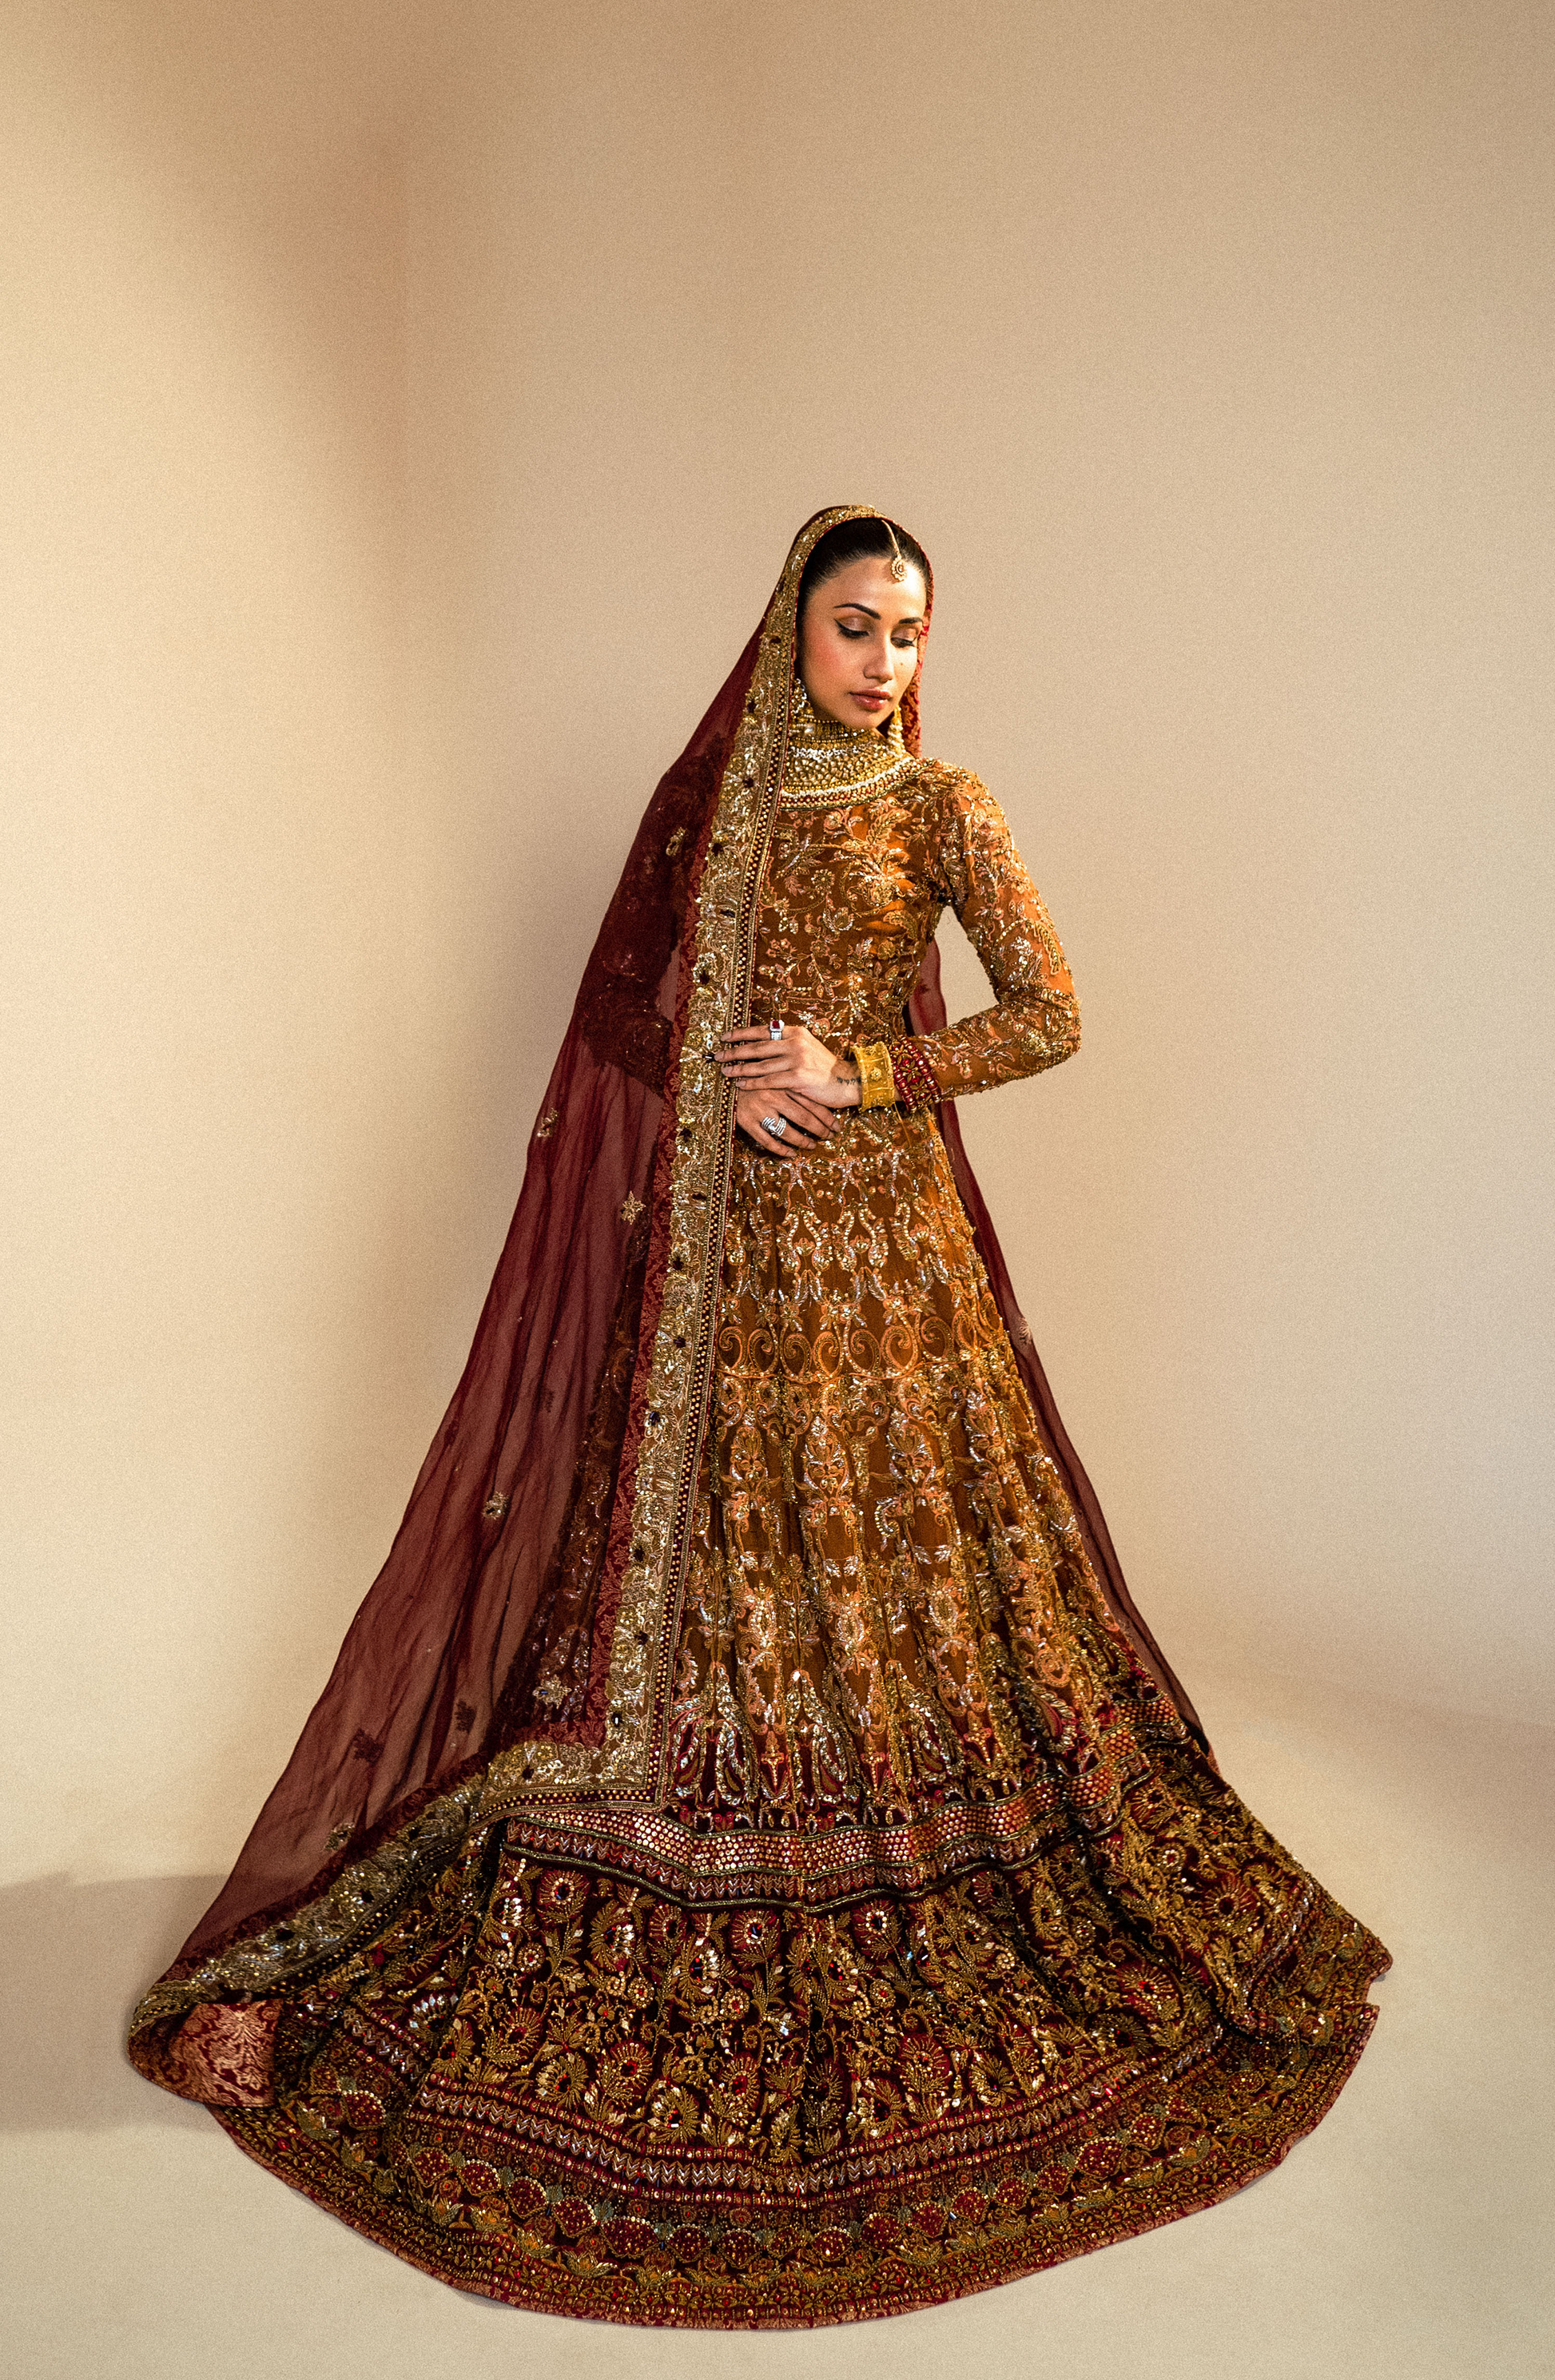 Bridal lehenga designs in Pakistan